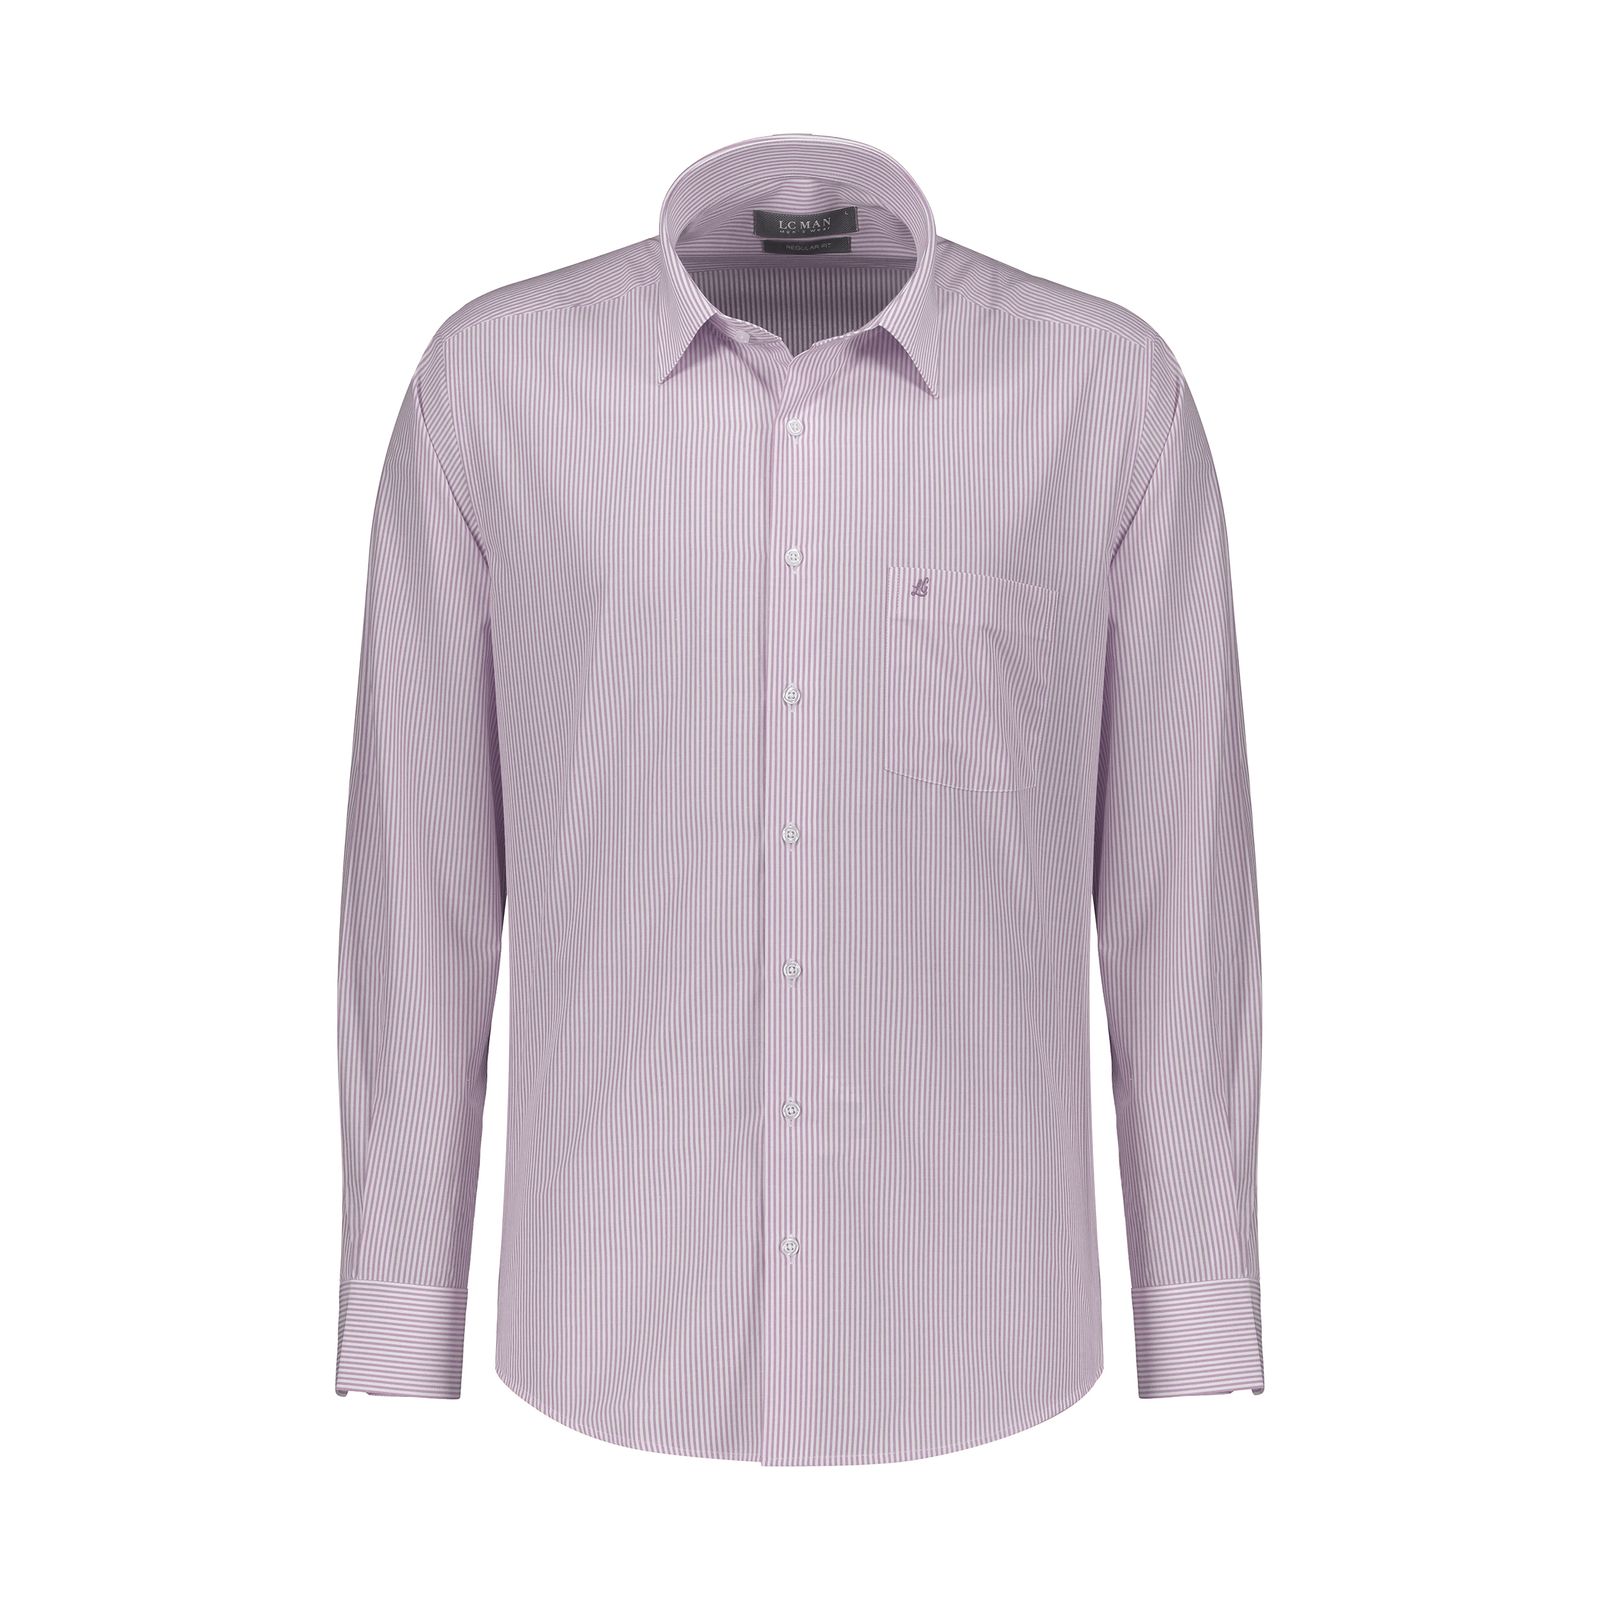 پیراهن آستین بلند مردانه ال سی من مدل 02181290-purple 082 -  - 1